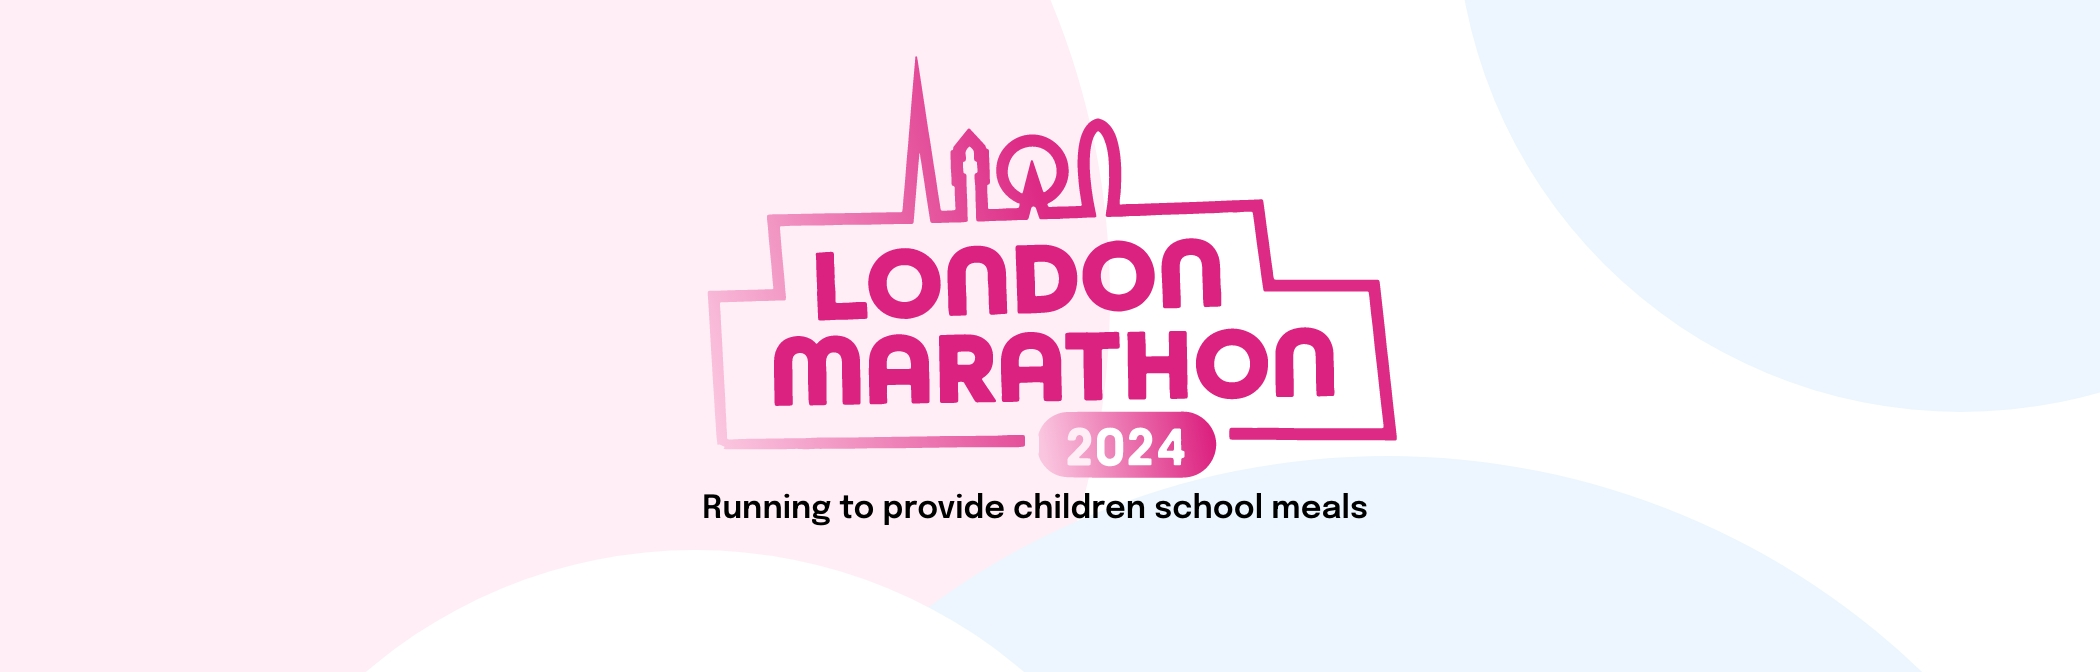 Banner image for Running London Marathon 2024 for Children children in underprivileged communities